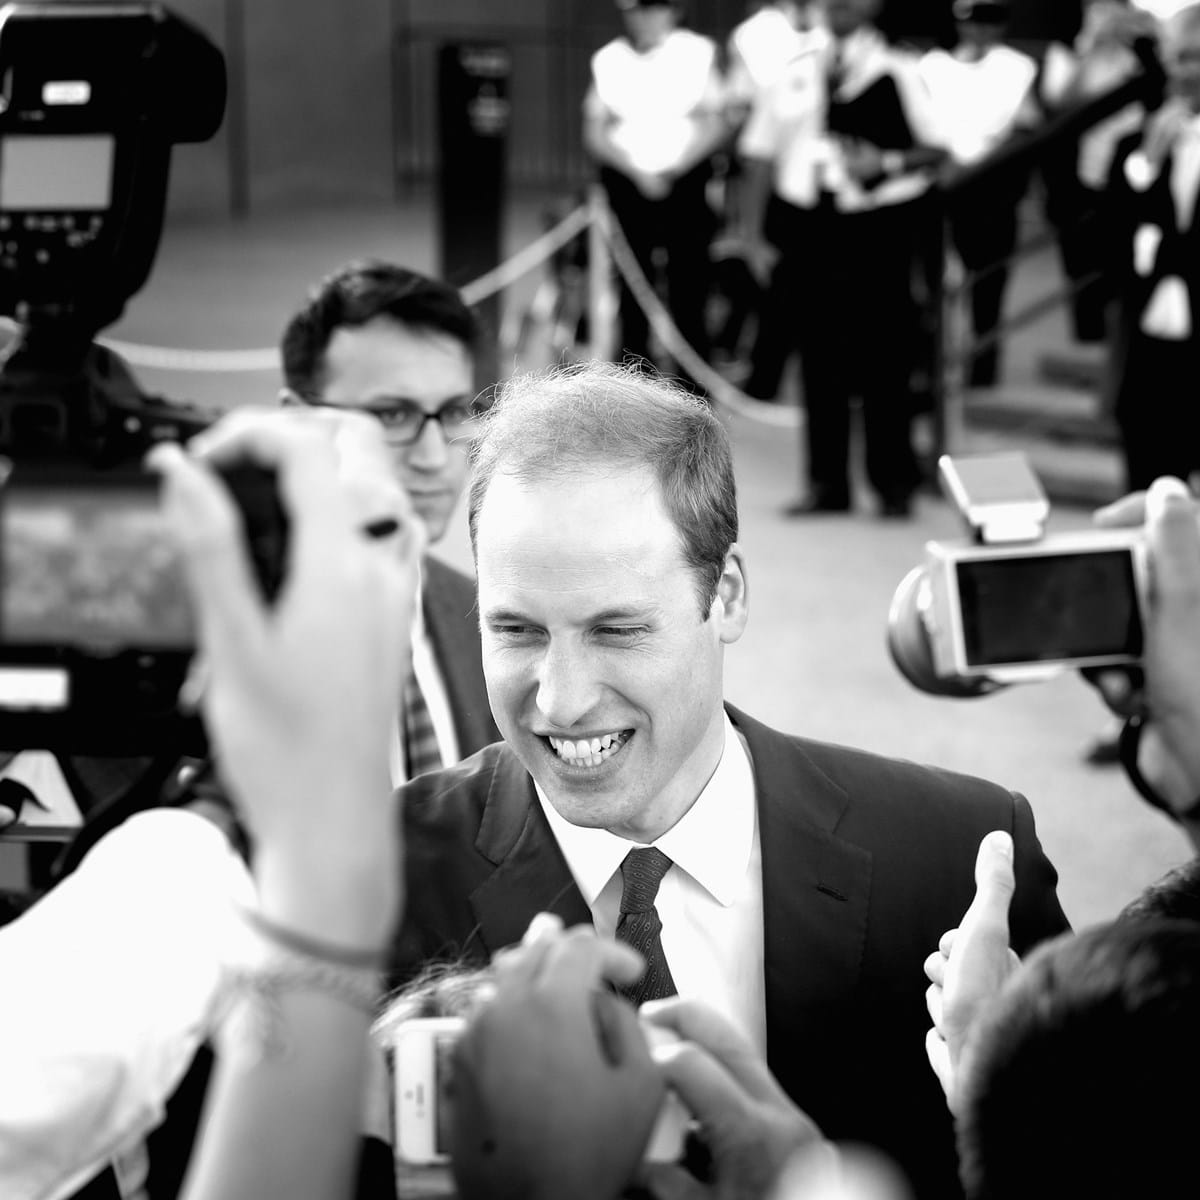 Príncipe William, um retrato íntimo do futuro rei britânico - Celebridades  foto